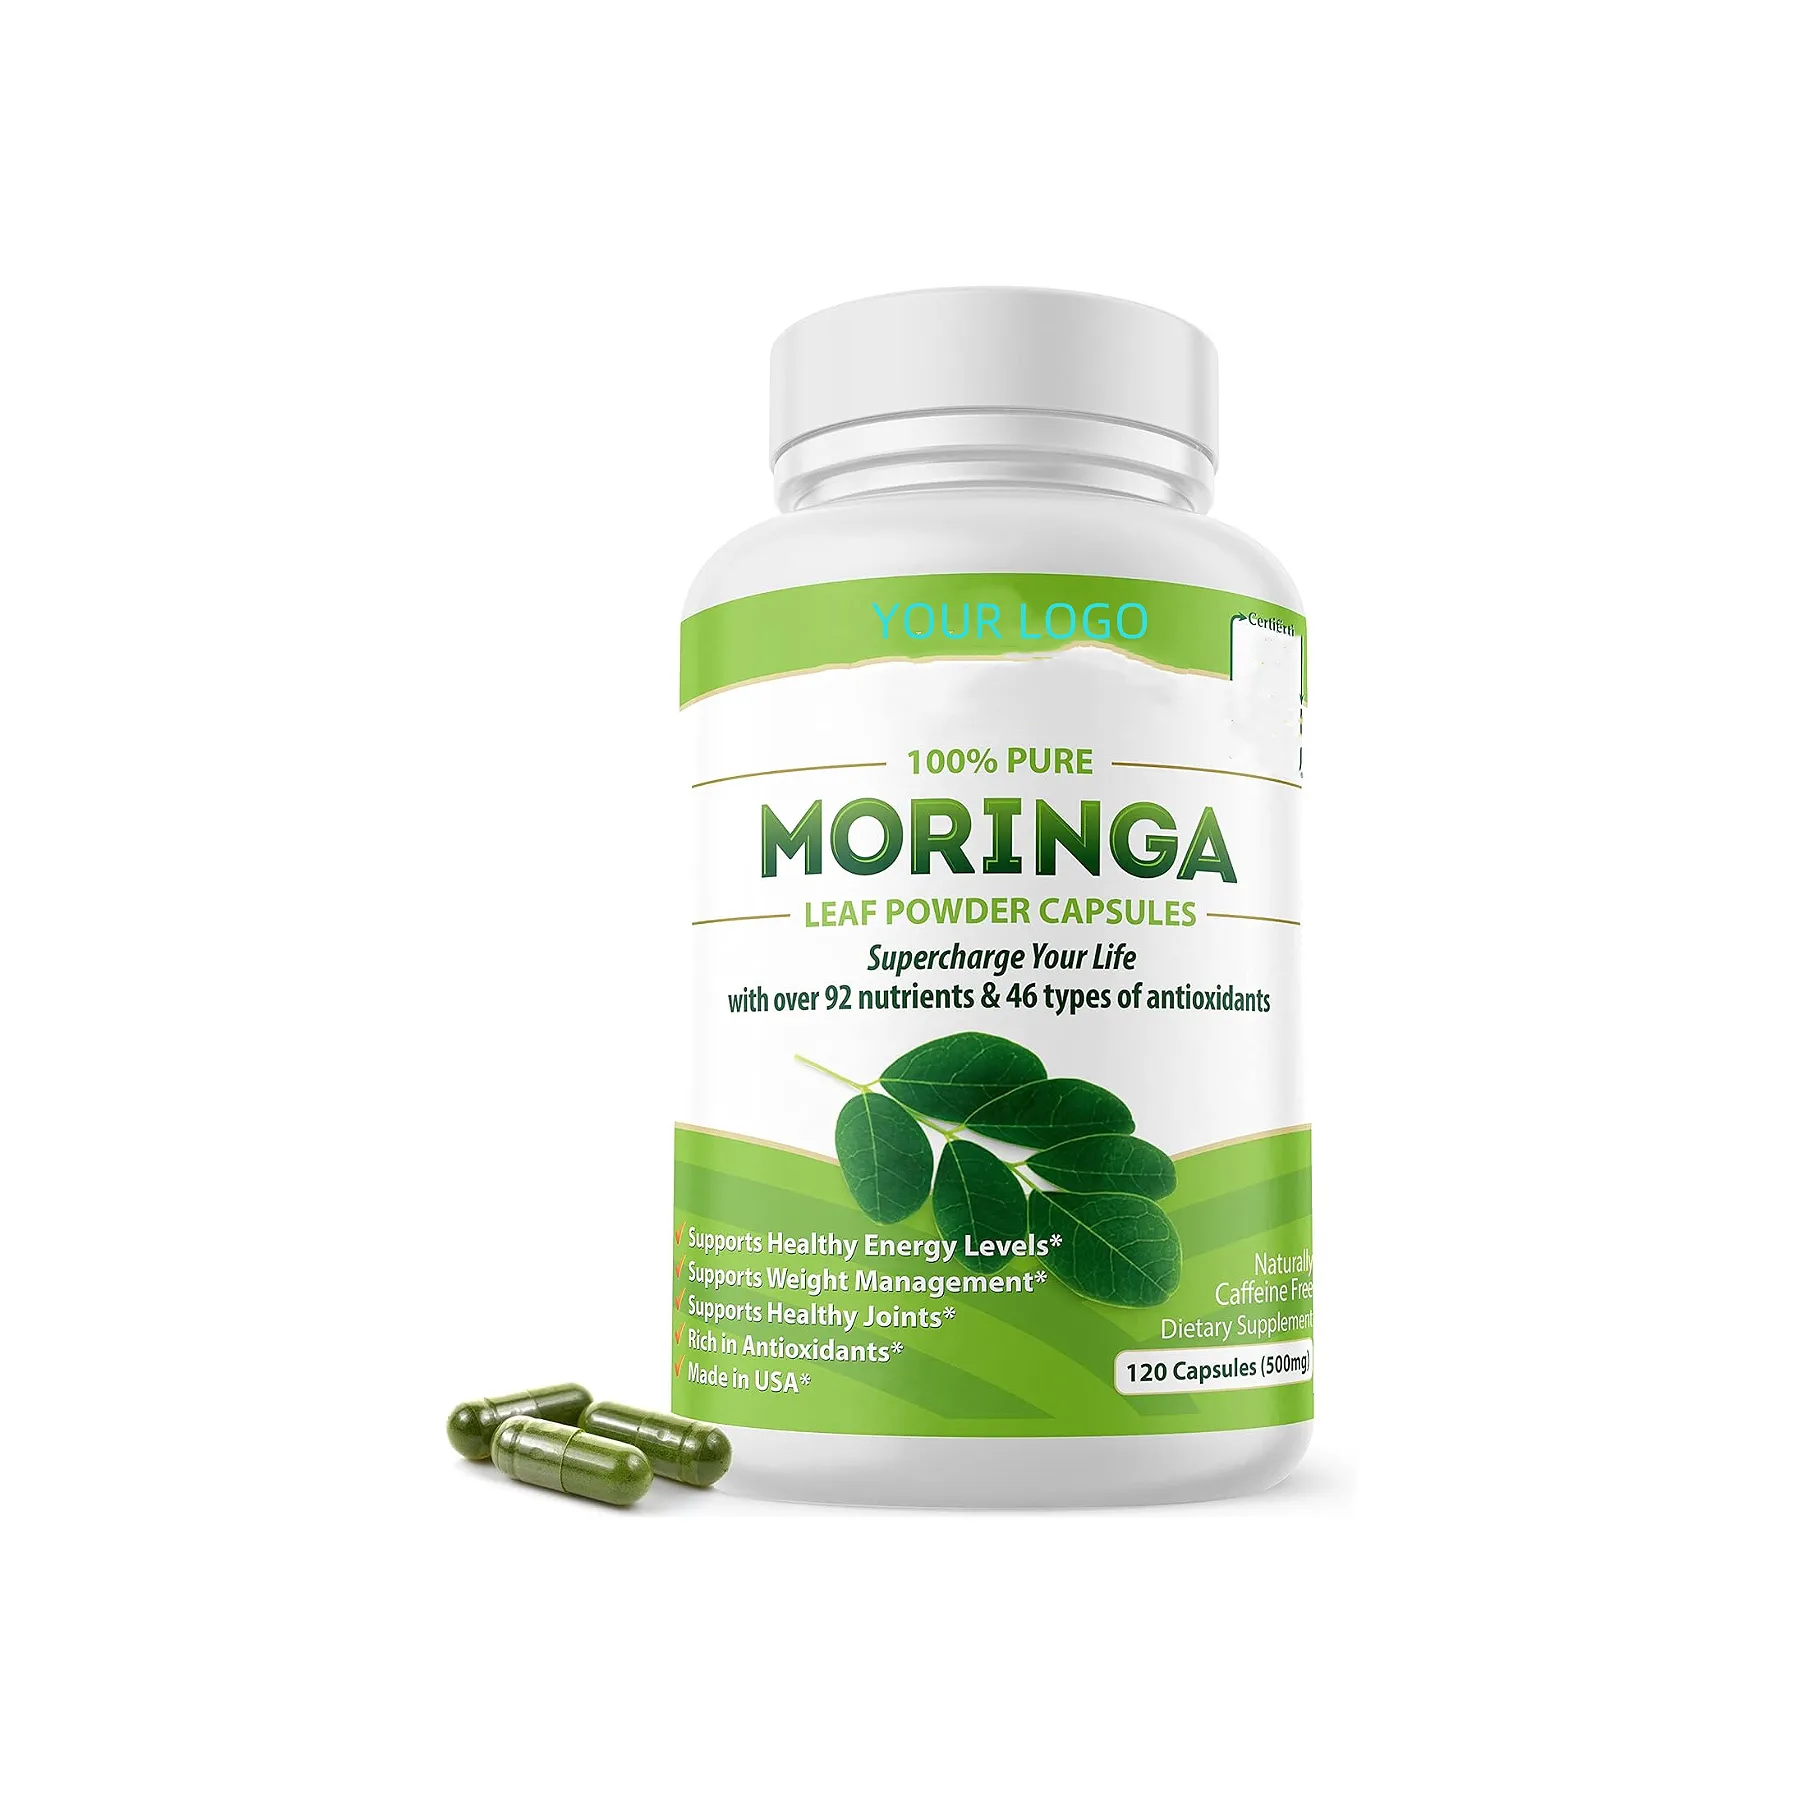 Nhà cung cấp chuyên nghiệp Moringa viên nang nguồn gốc duy nhất Moringa bột Moringa lá năng lượng sự trao đổi chất & miễn dịch hỗ trợ.